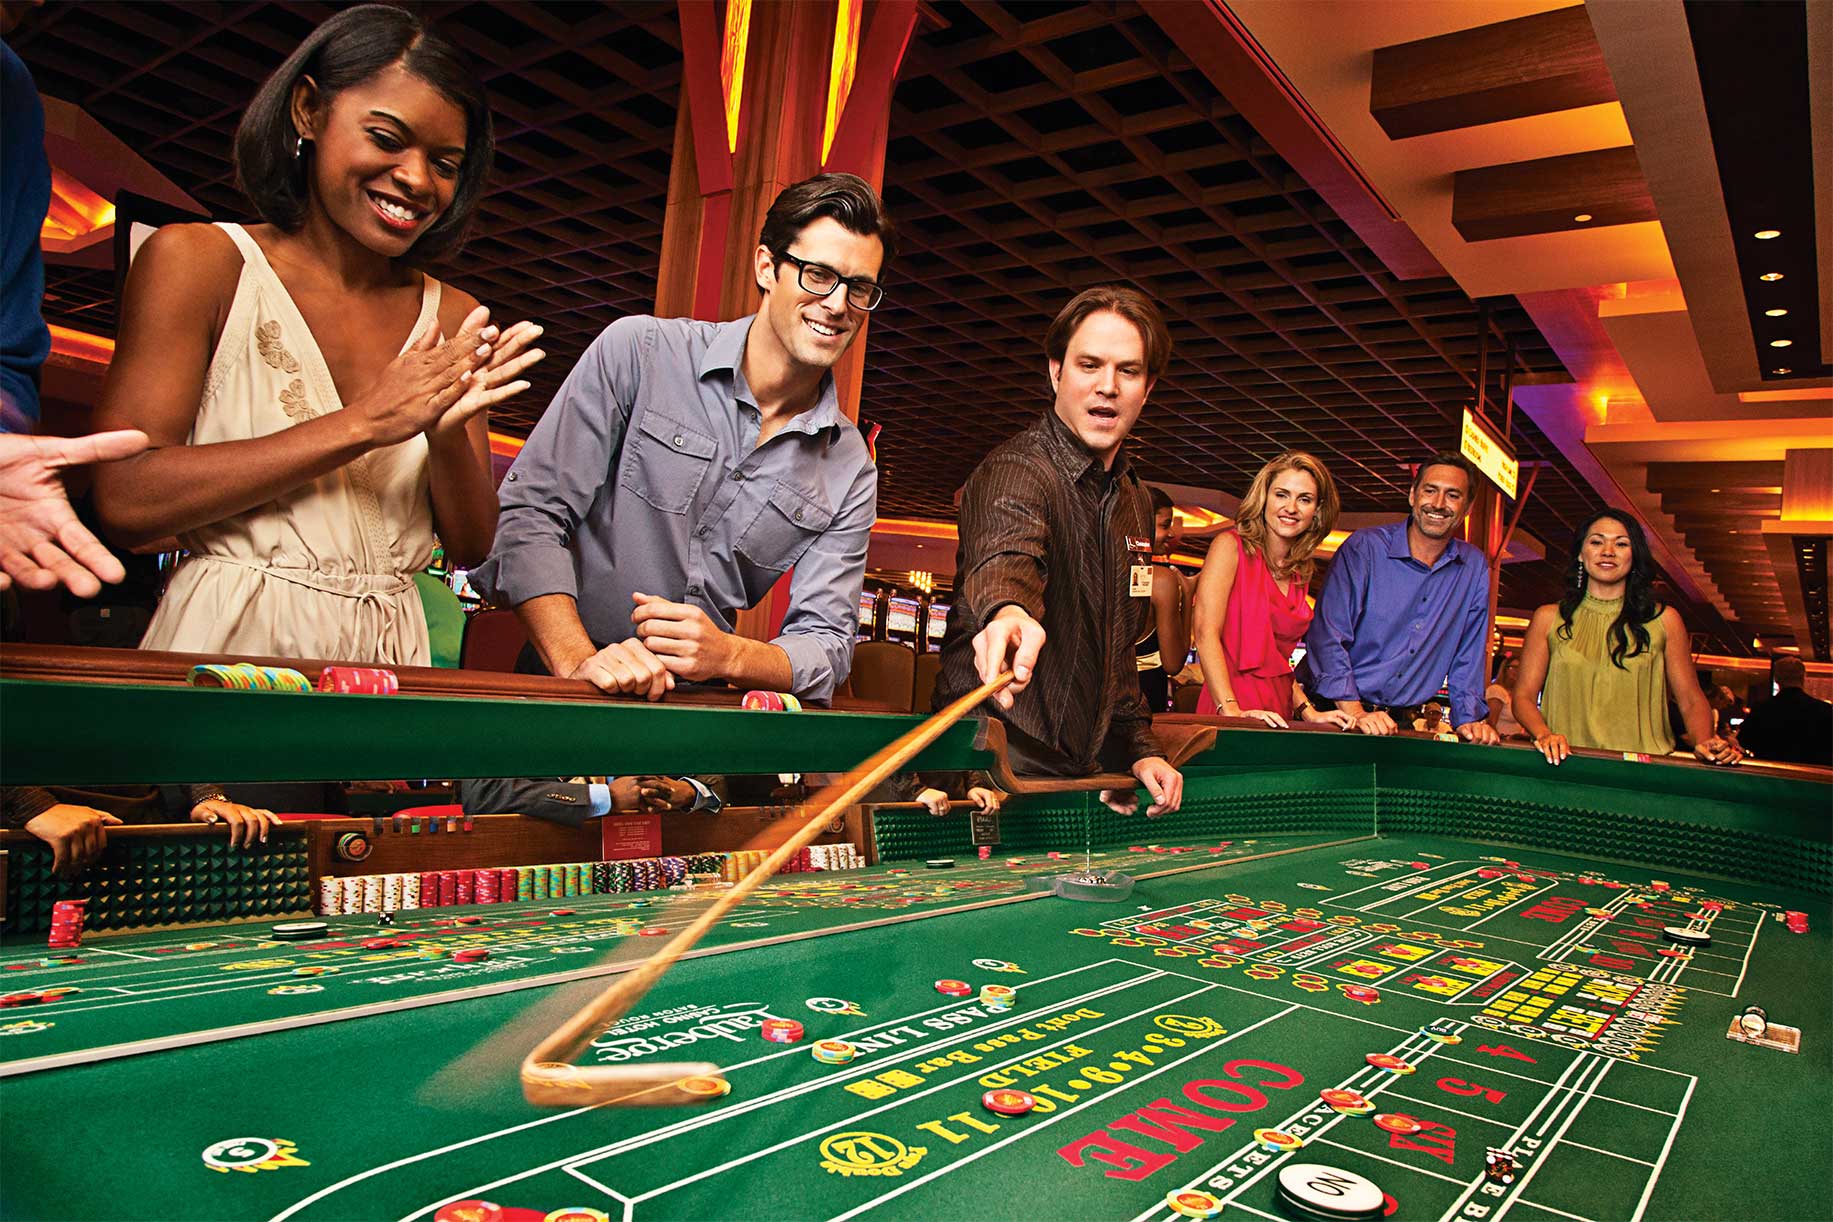 Топ казино онлайн по мнению игроков - авторитетные отзывы от специалистов интернет-рынка